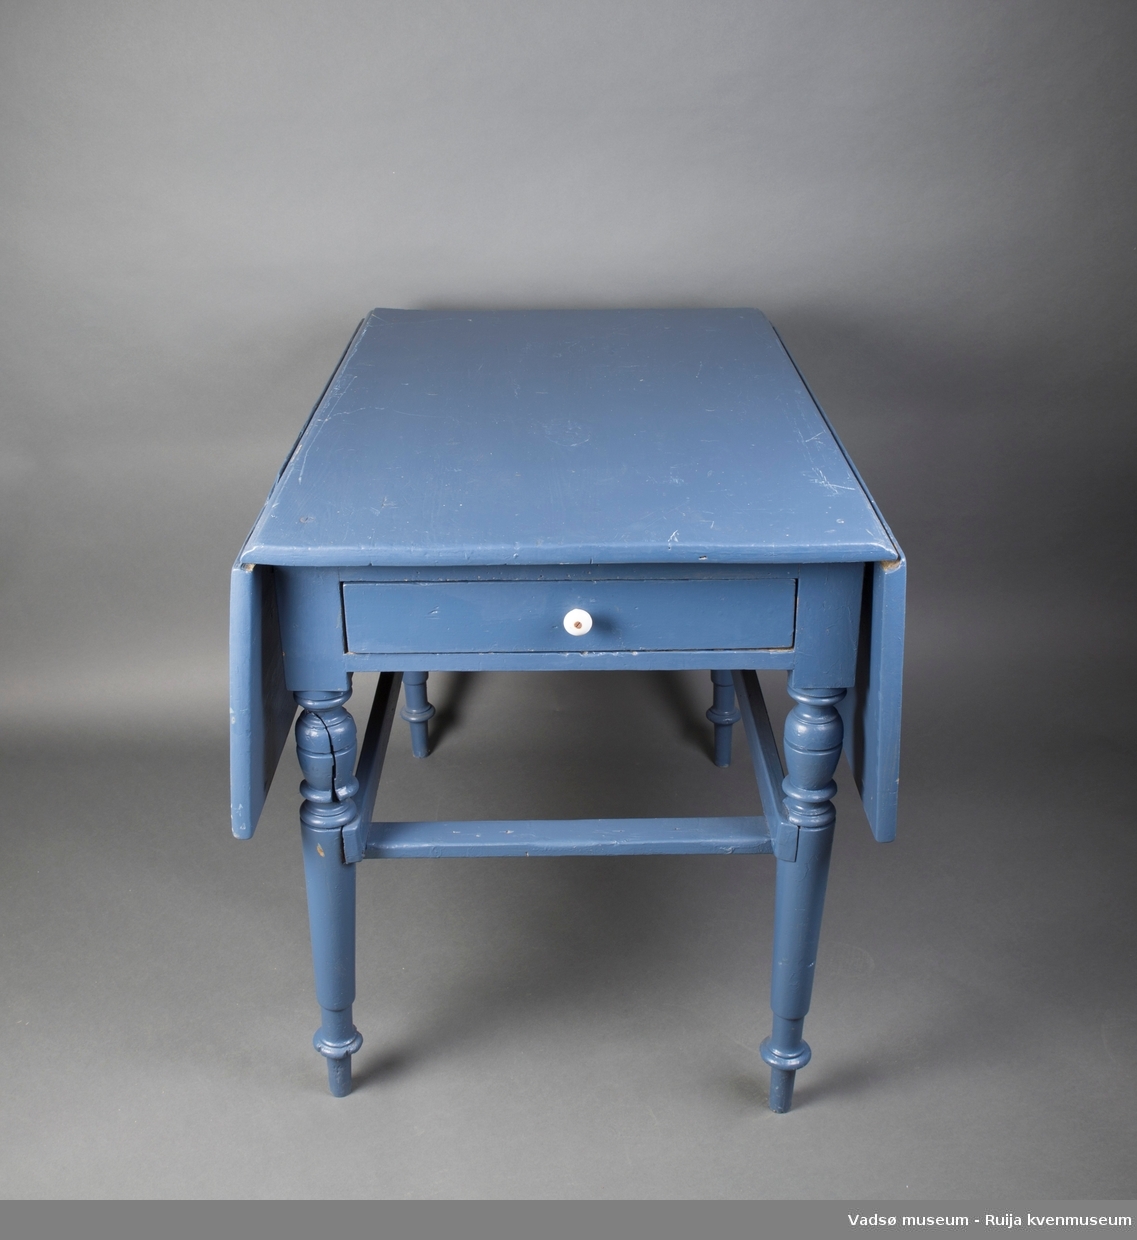 Rektangulært trebord med dreide bein. Bordet har hengslede sideklaffer. I ene kortenden er det en skuff med emaljert håndtaksknott. Bordet er malt i blått.